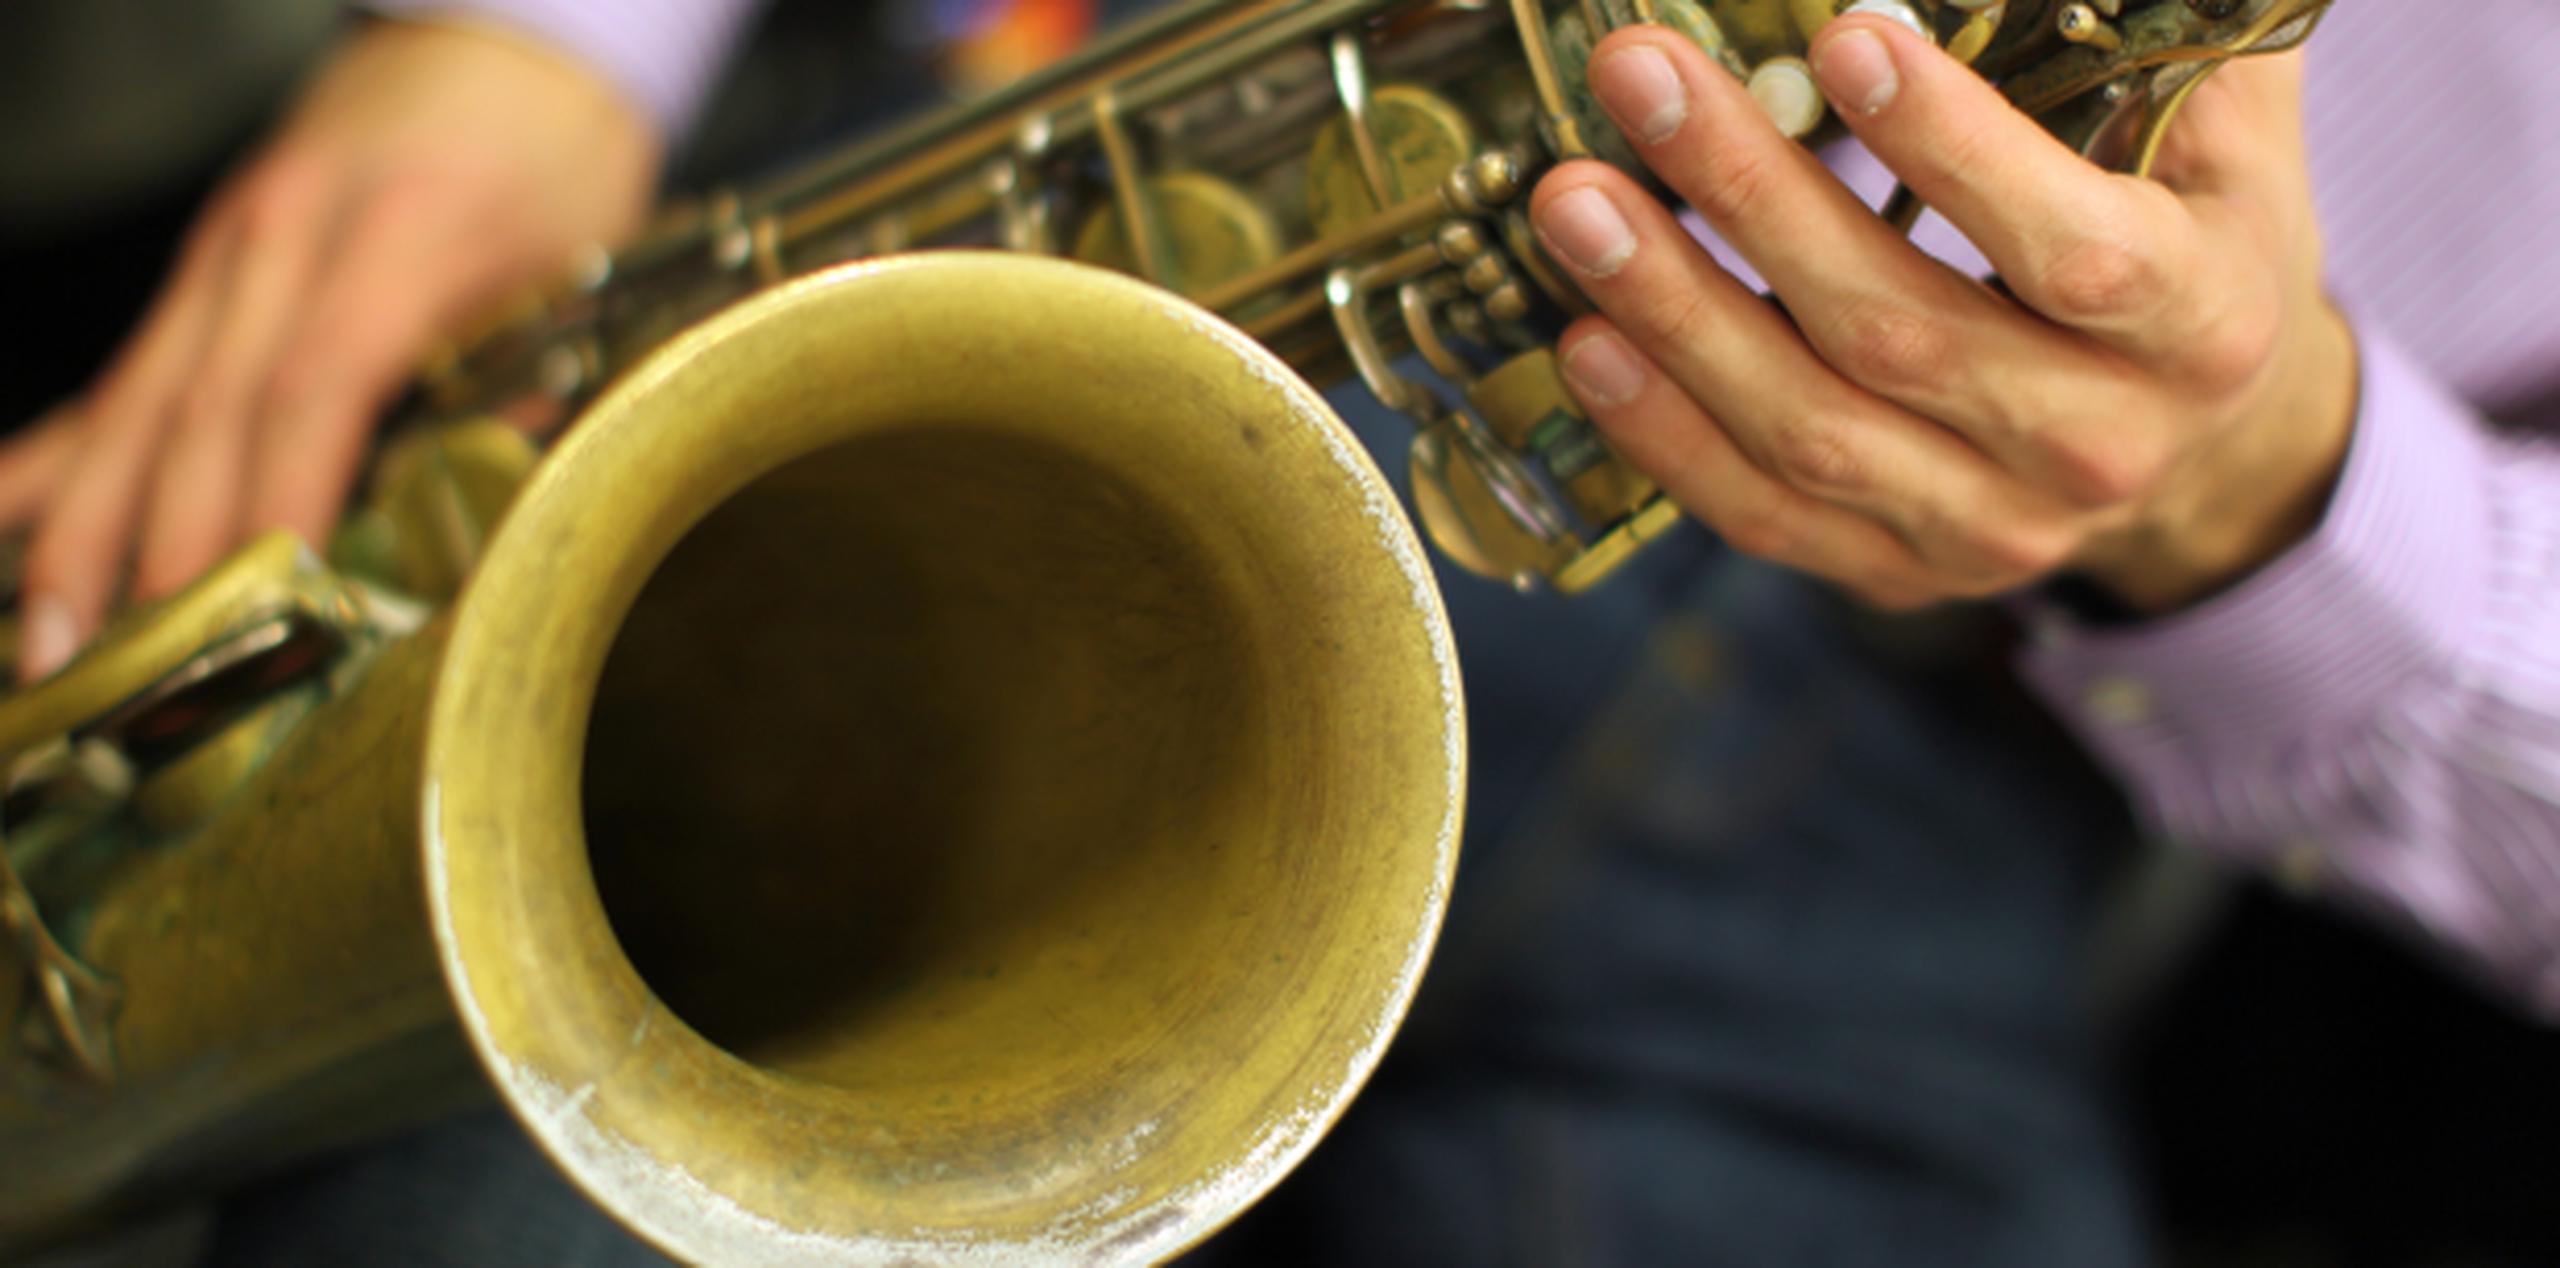 Ventana al Jazz se lleva a cabo los últimos domingos de cada en mes en Bahía Urbana. (Archivo)